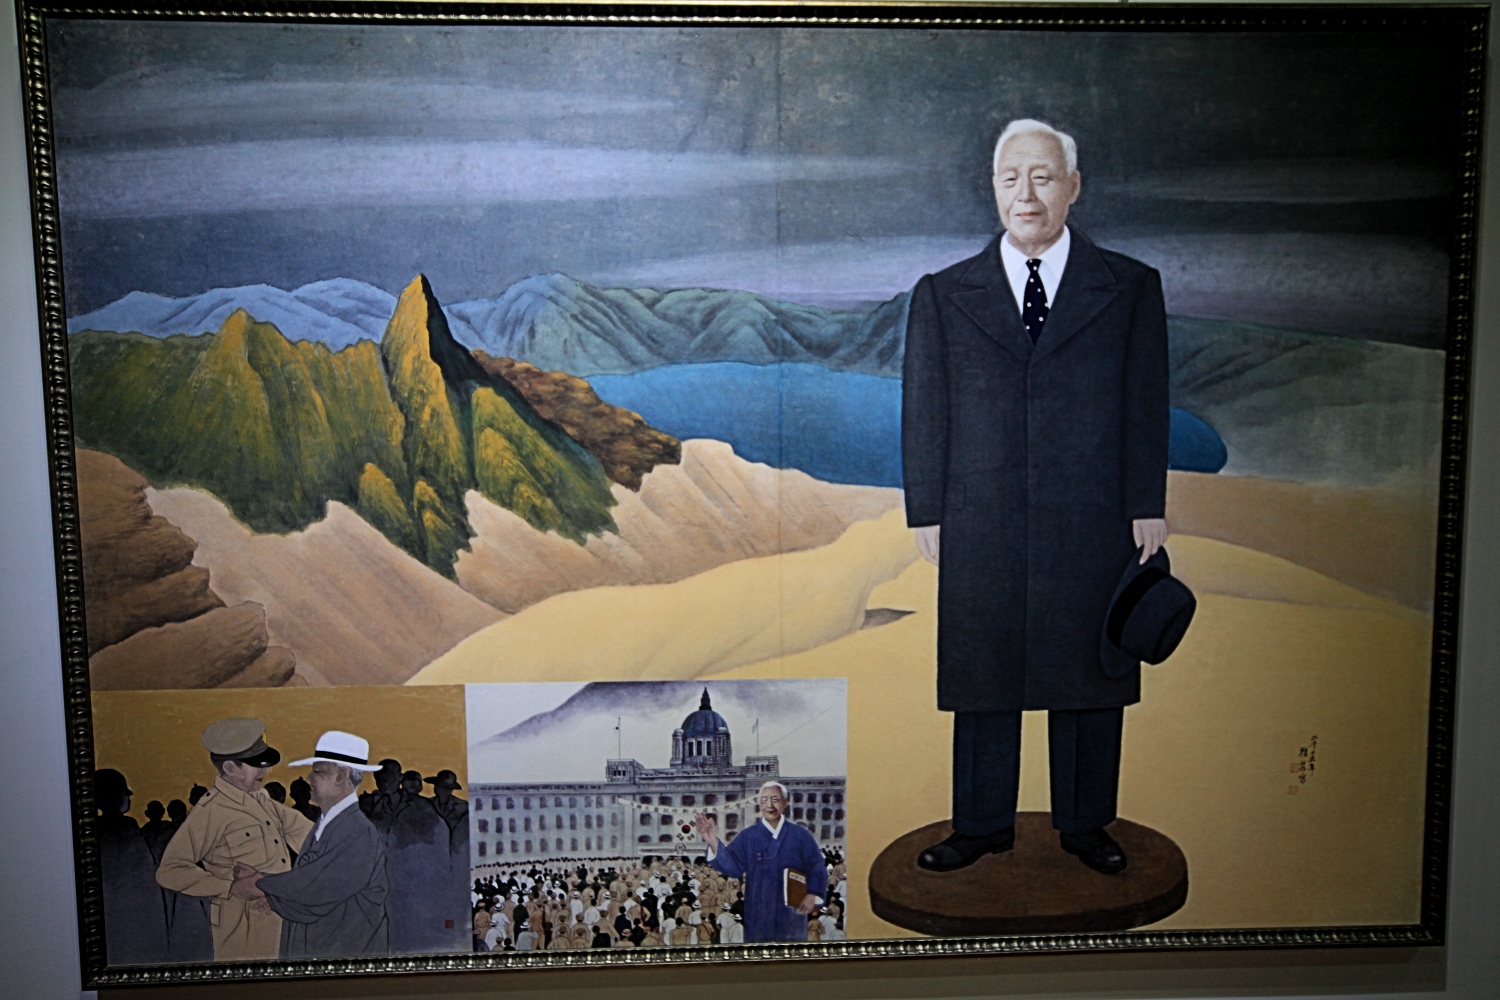 Rhee Syngman na szczycie góry Paektu prezentuje się mniej spektakularnie niż Kim Dzong Un. Natomiast scenka miłosna z generałem MacArthurem (w dolnym lewym rogu) nas urzekła. Fot. RH